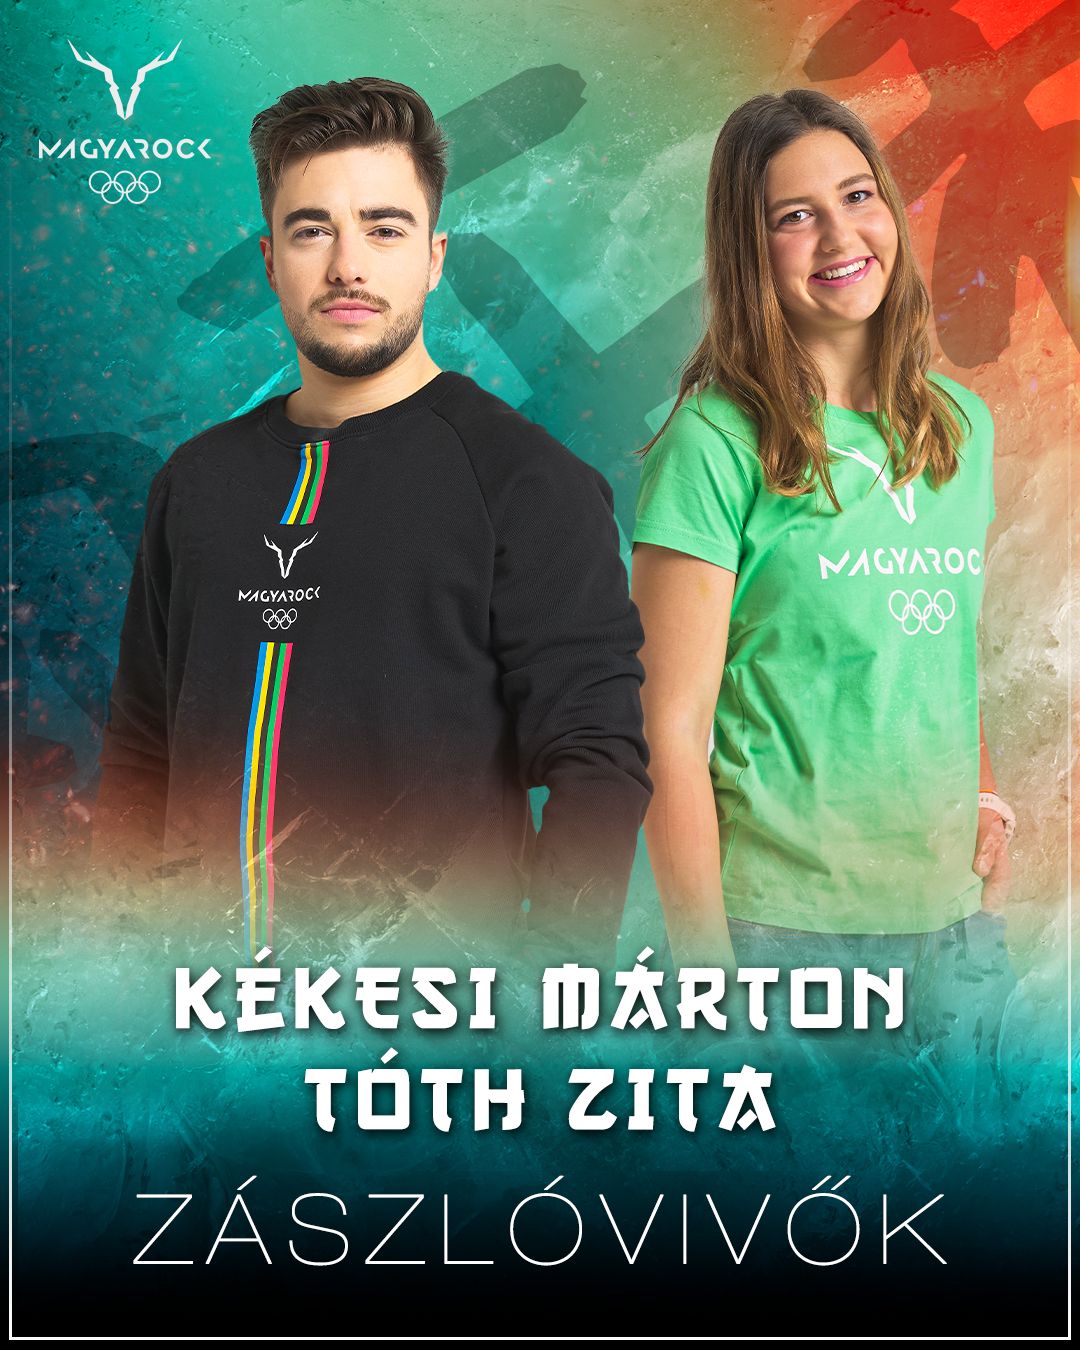 Kékesi Márton és Tóth Zita viszi a magyar zászlót a 2022-es pekingi téli olimpia megnyitóünnepségén. Fotó: Magyarock - Olympic Team Hungary Facebook-oldala